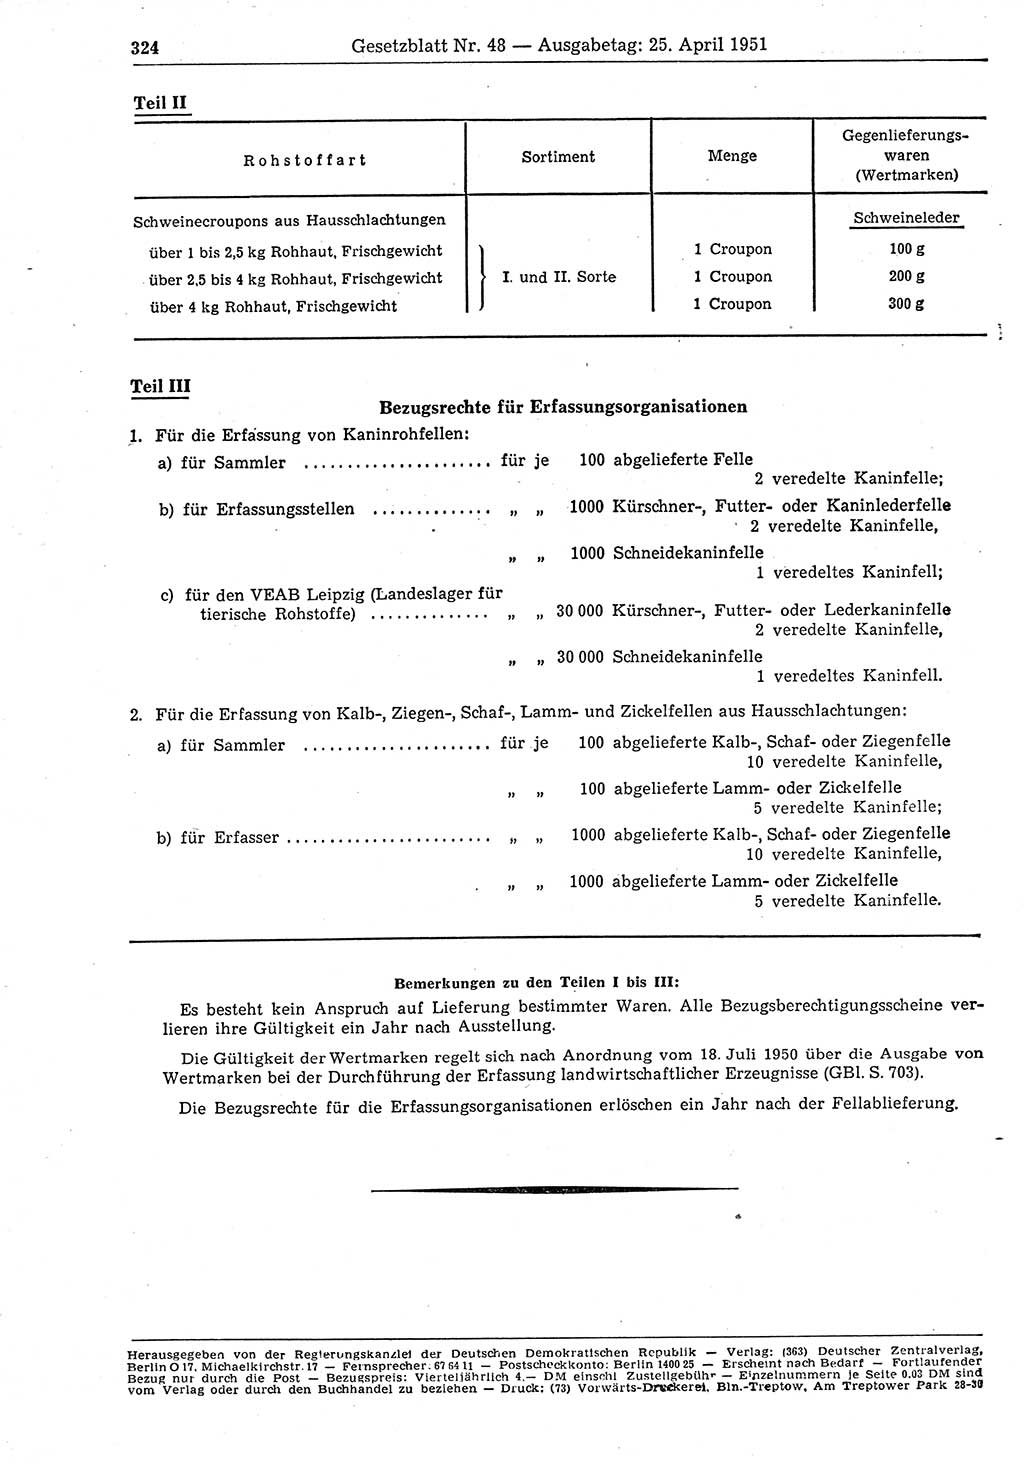 Gesetzblatt (GBl.) der Deutschen Demokratischen Republik (DDR) 1951, Seite 324 (GBl. DDR 1951, S. 324)